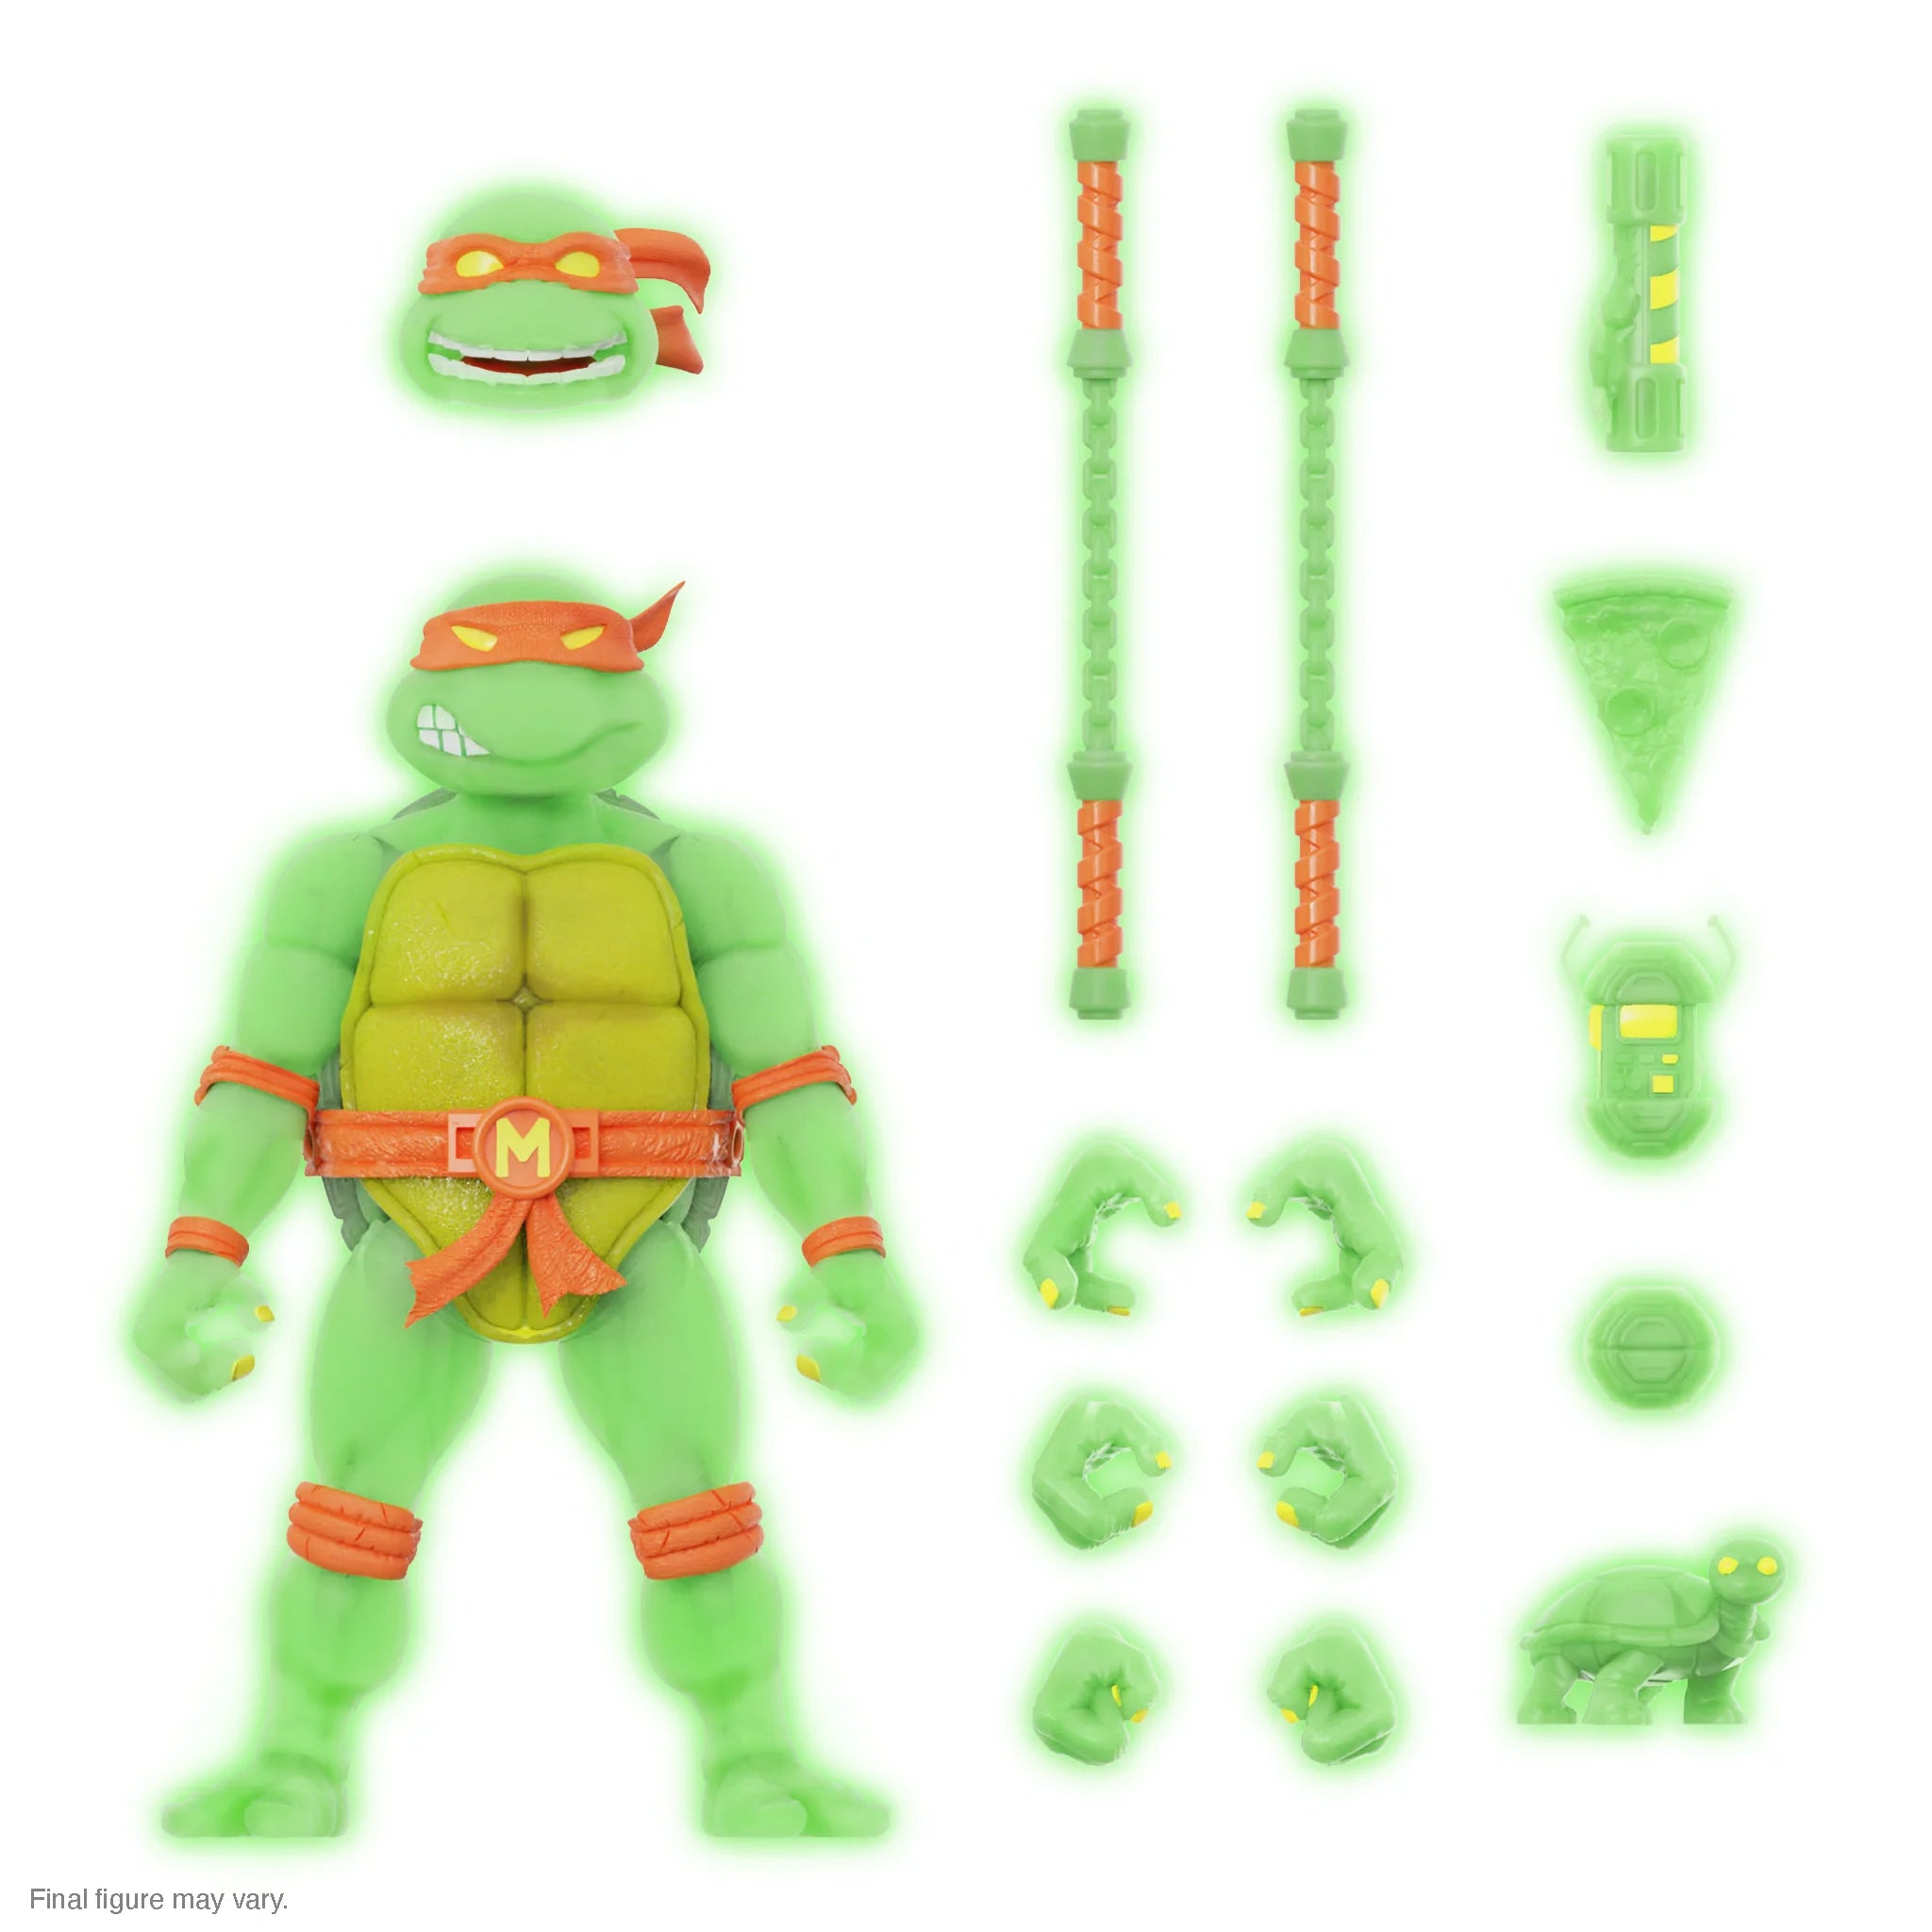 Super7 - Teenage Mutant Ninja Turtles ULTIMATES! Exclusive - Michelangelo Mutagen Ooze